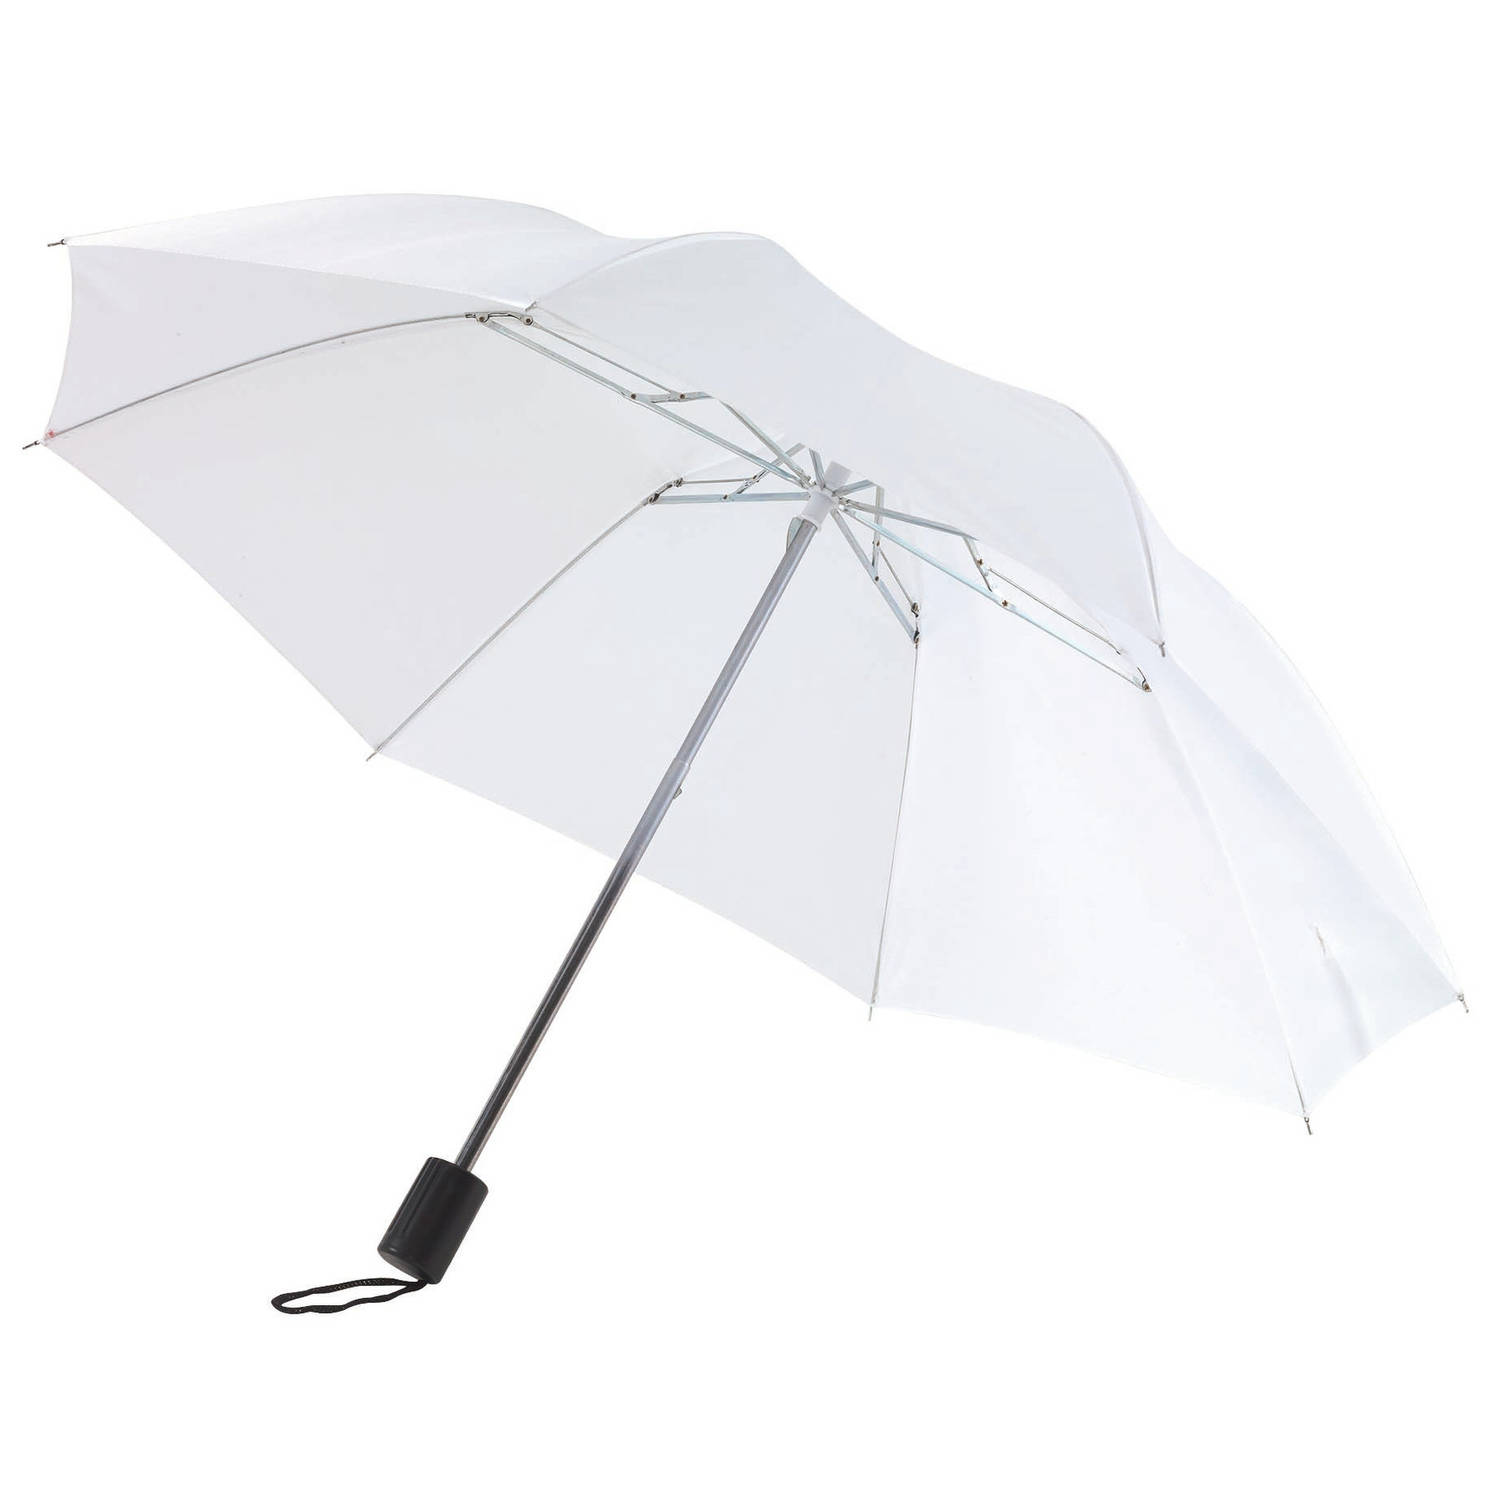 Liever Graan Uitgang Opvouwbare paraplu wit 85 cm - Paraplu's | Blokker